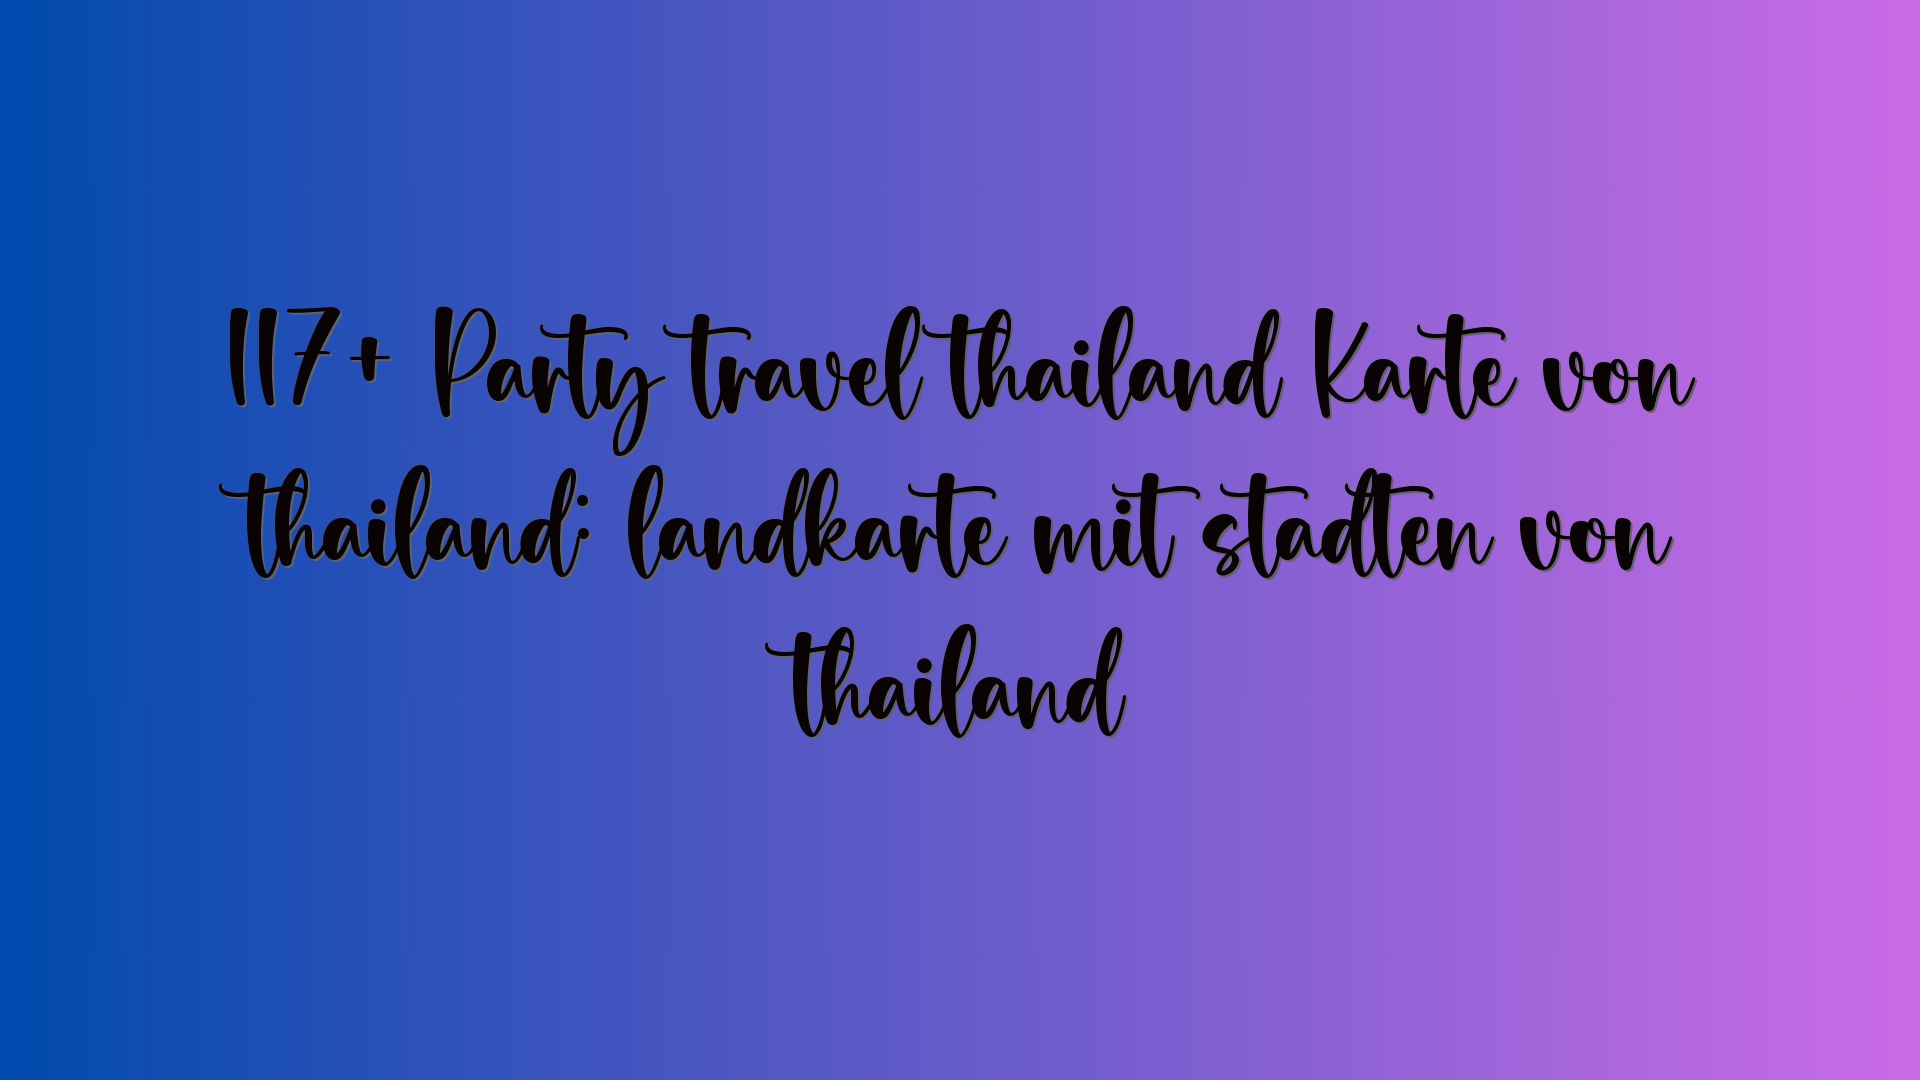 117+ Party travel thailand Karte von thailand: landkarte mit städten von thailand